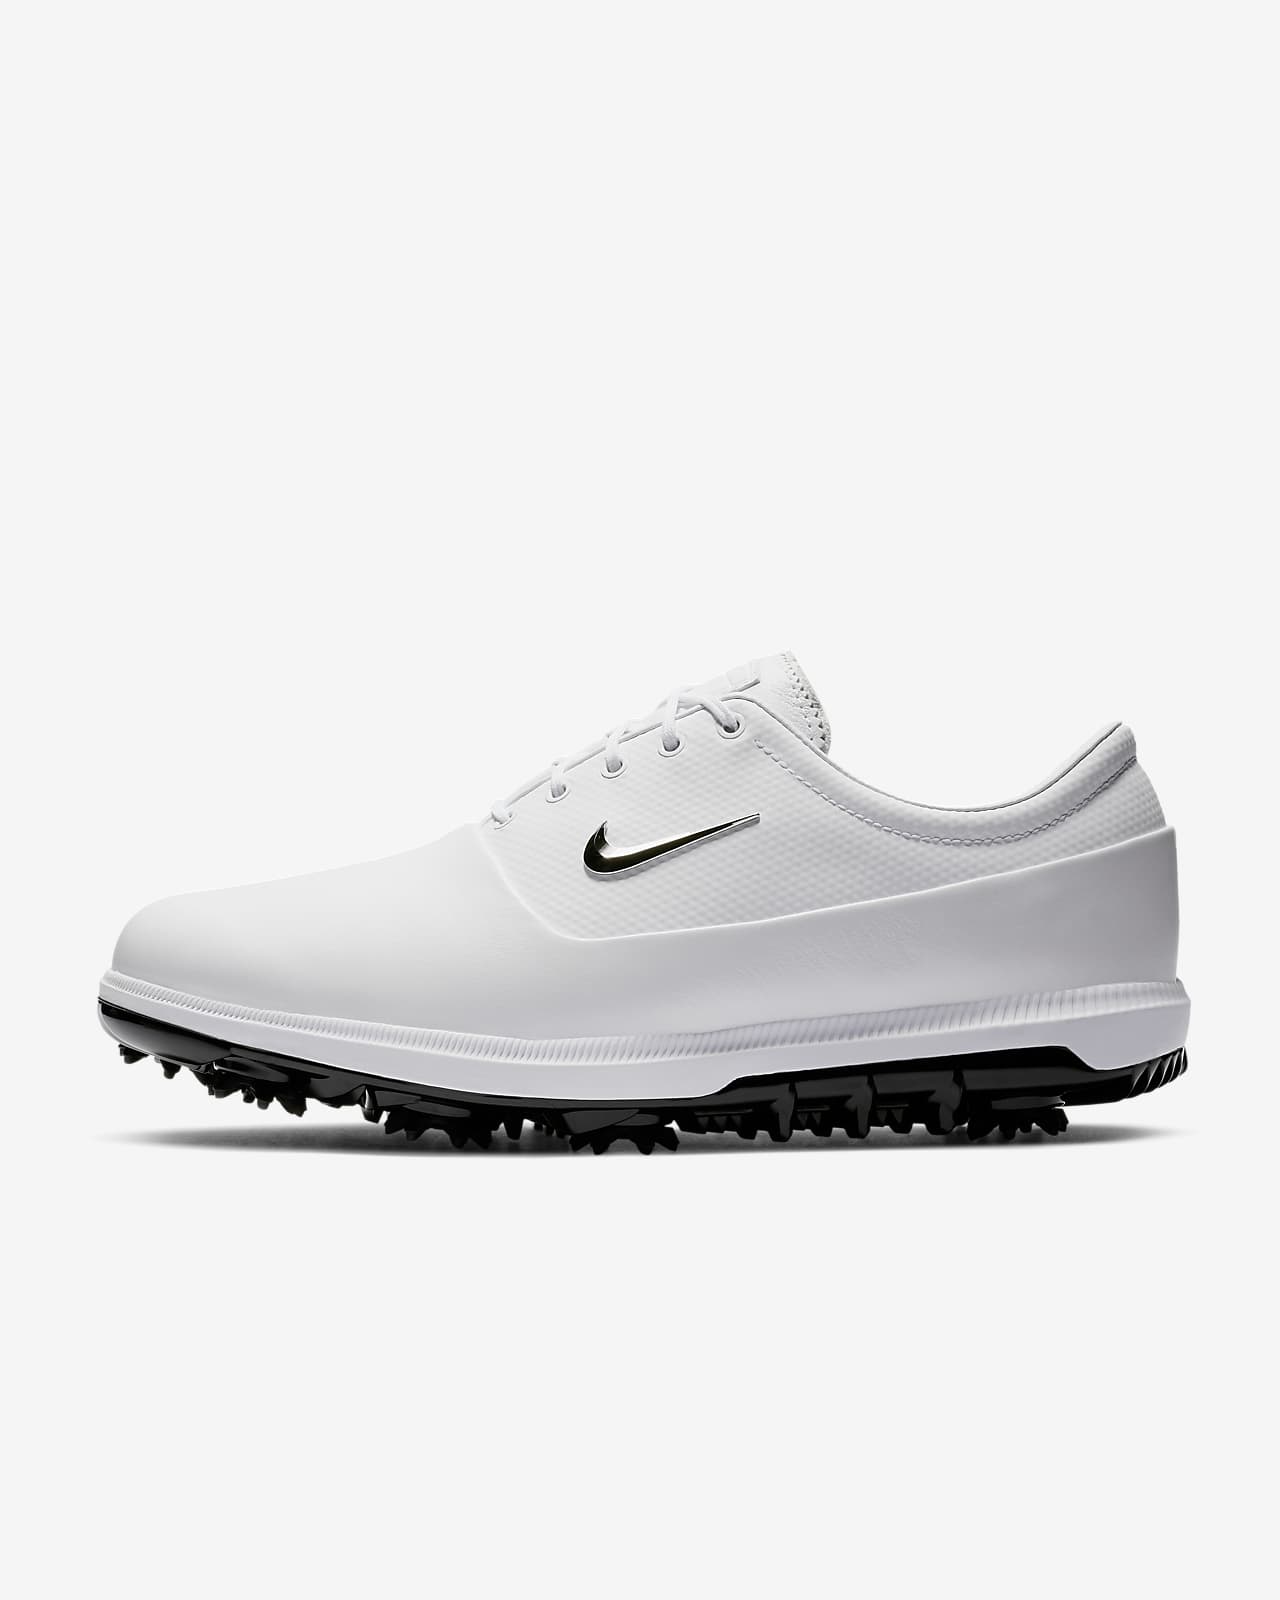 white nike air golf shoes